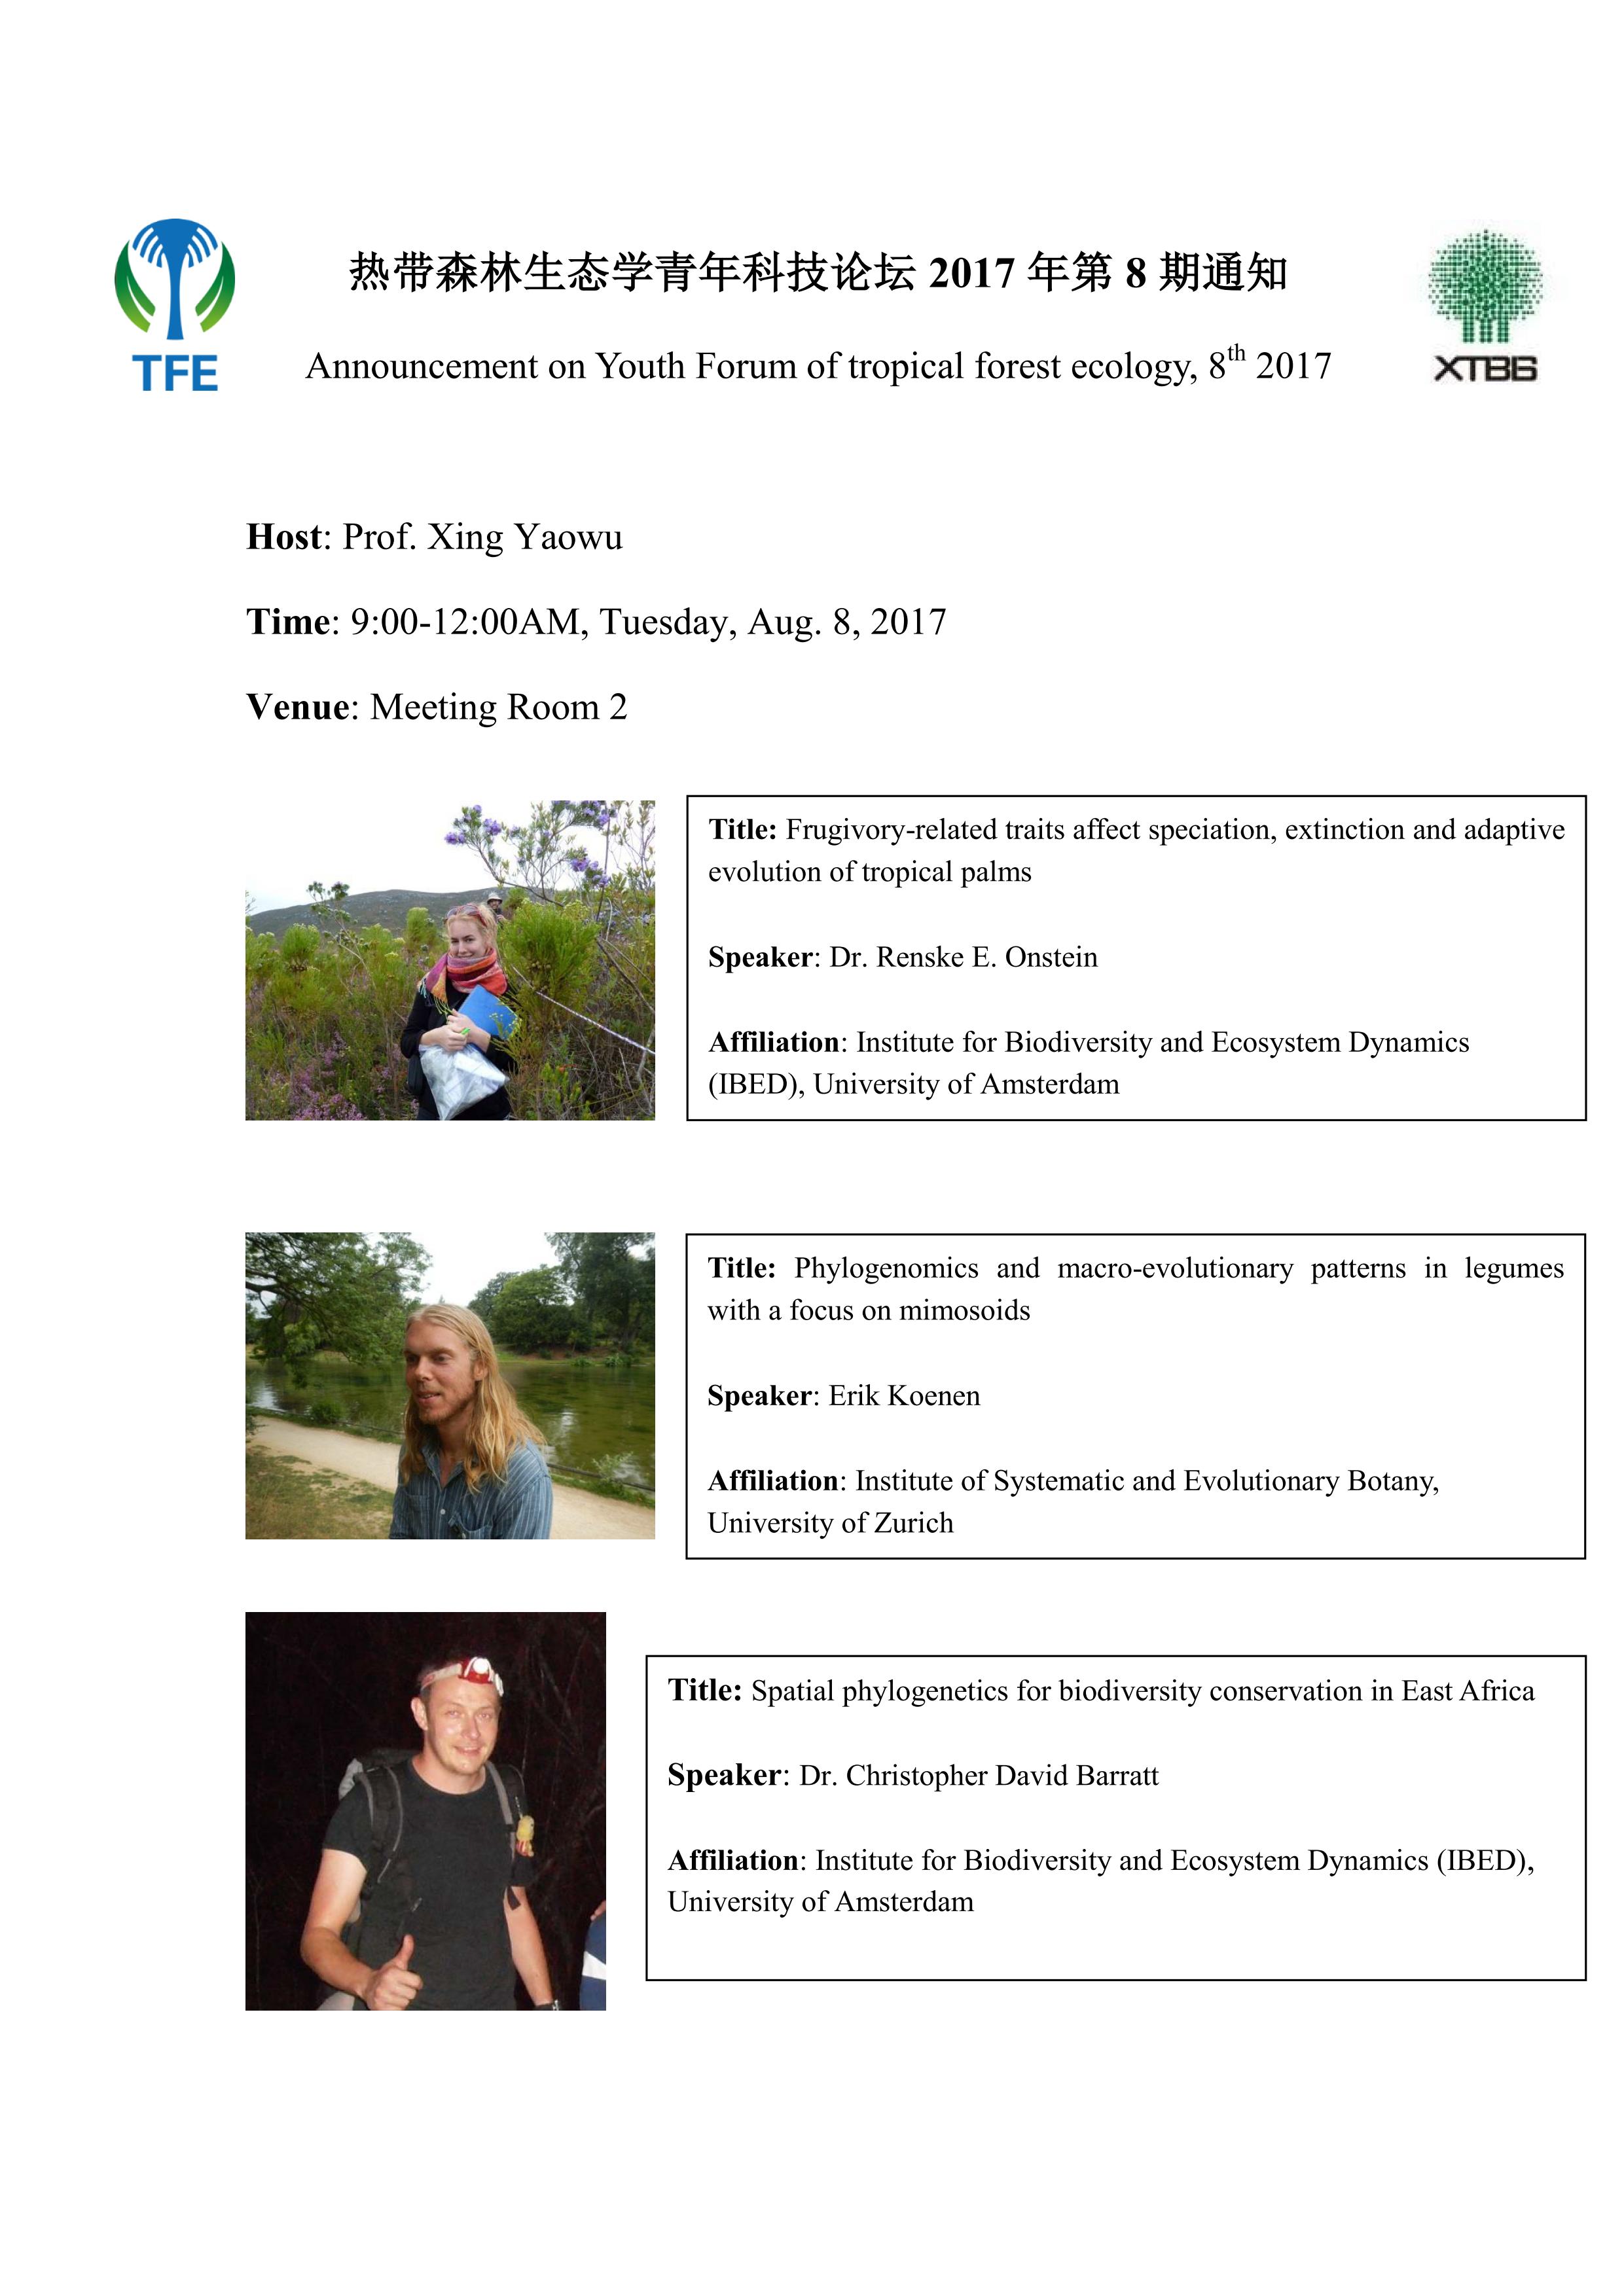 热带森林生态学青年科技论坛2017年第8期通知.pdf_01.jpg